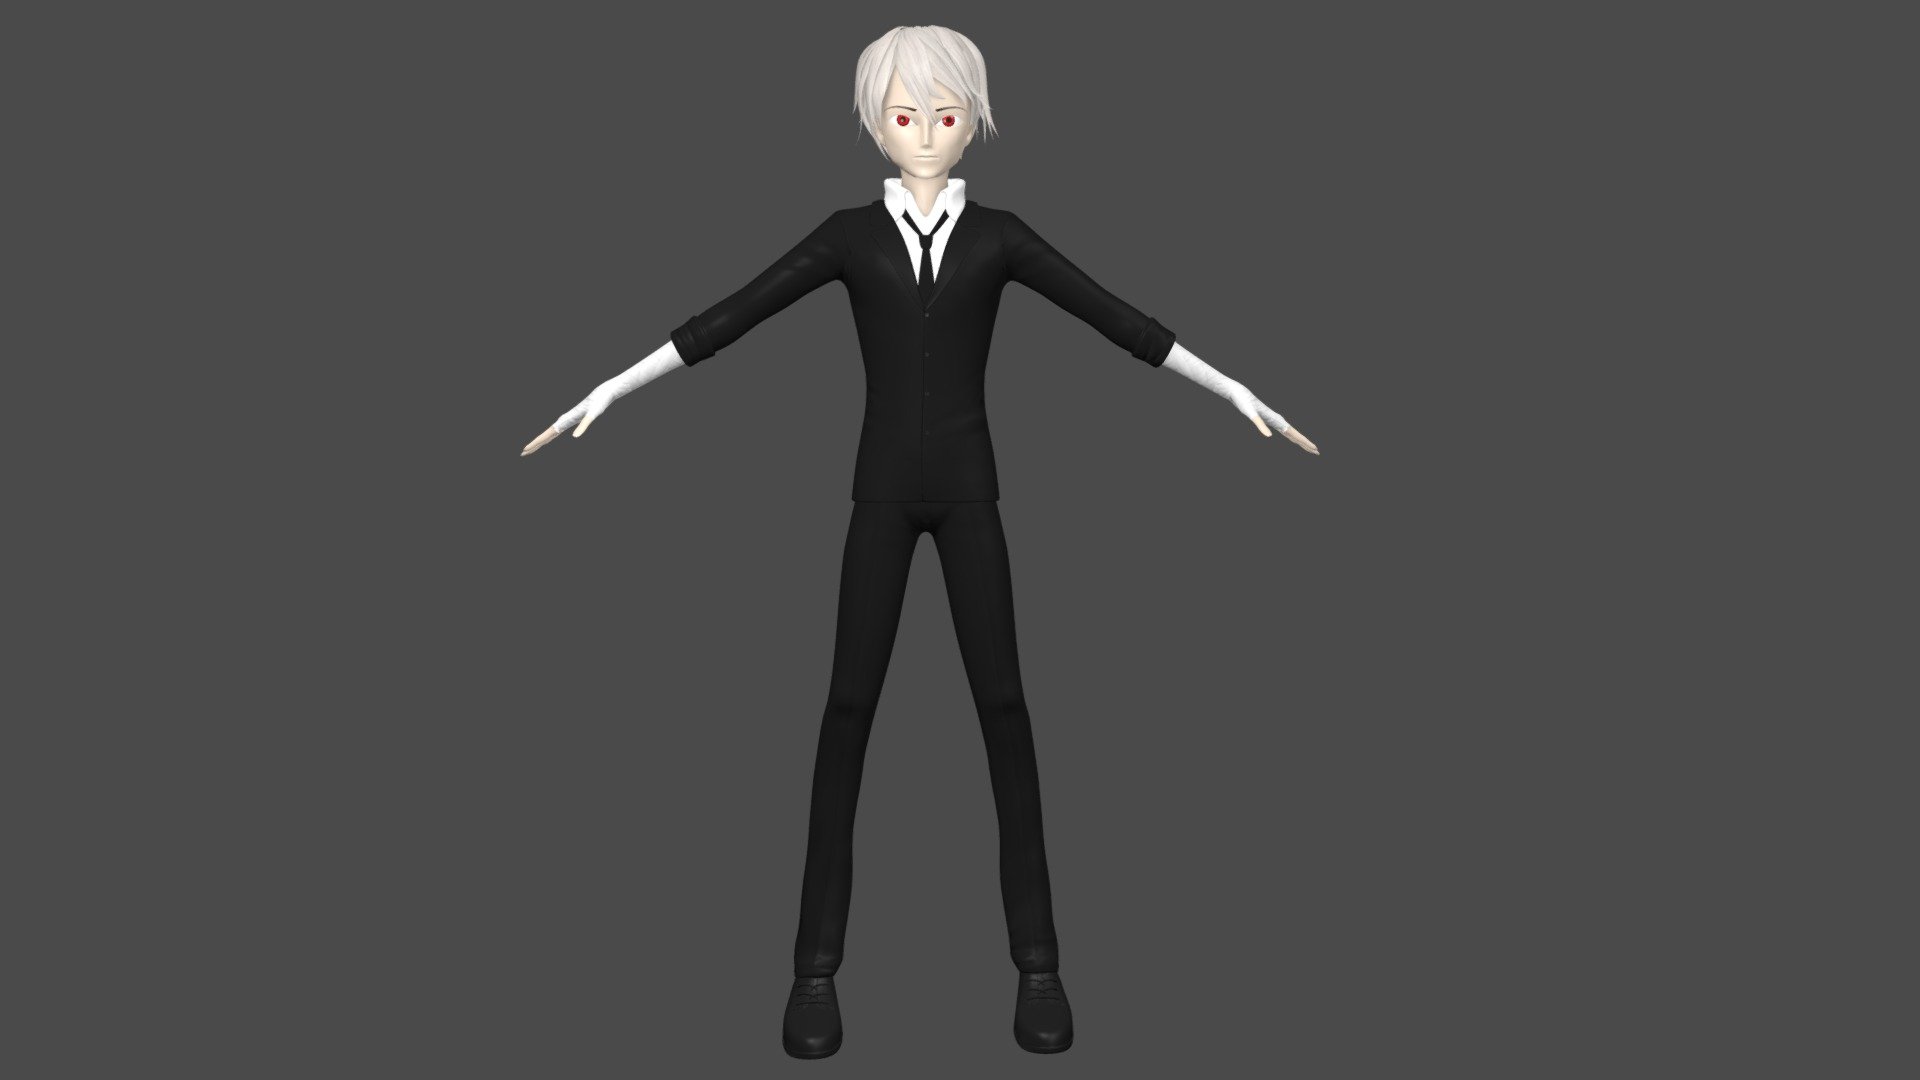 Nhân vật Anime Boy với mô hình 3D cực chân thực của VIAdvena (@hard3d) [dc36f69]. Cùng đắm chìm trong thế giới ảo với nhân vật được tạo ra với công nghệ 3D hiện đại. Tải và thưởng thức miễn phí ngay!